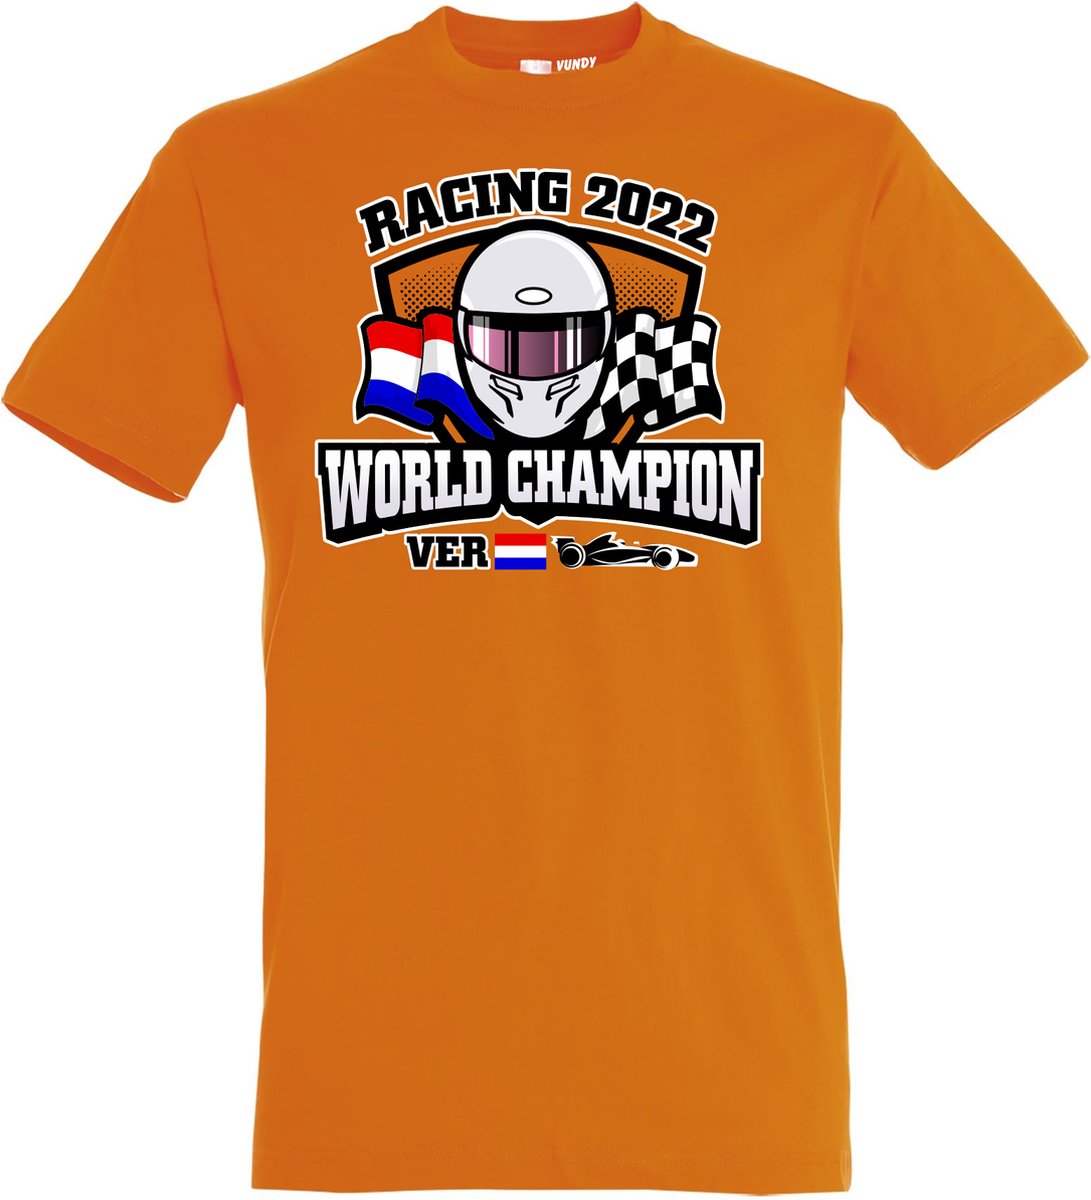 T-shirt helm World Champion Racing  2022 | Max Verstappen / Red Bull Racing / Formule 1 Fan | Wereldkampioen | Oranje | maat S